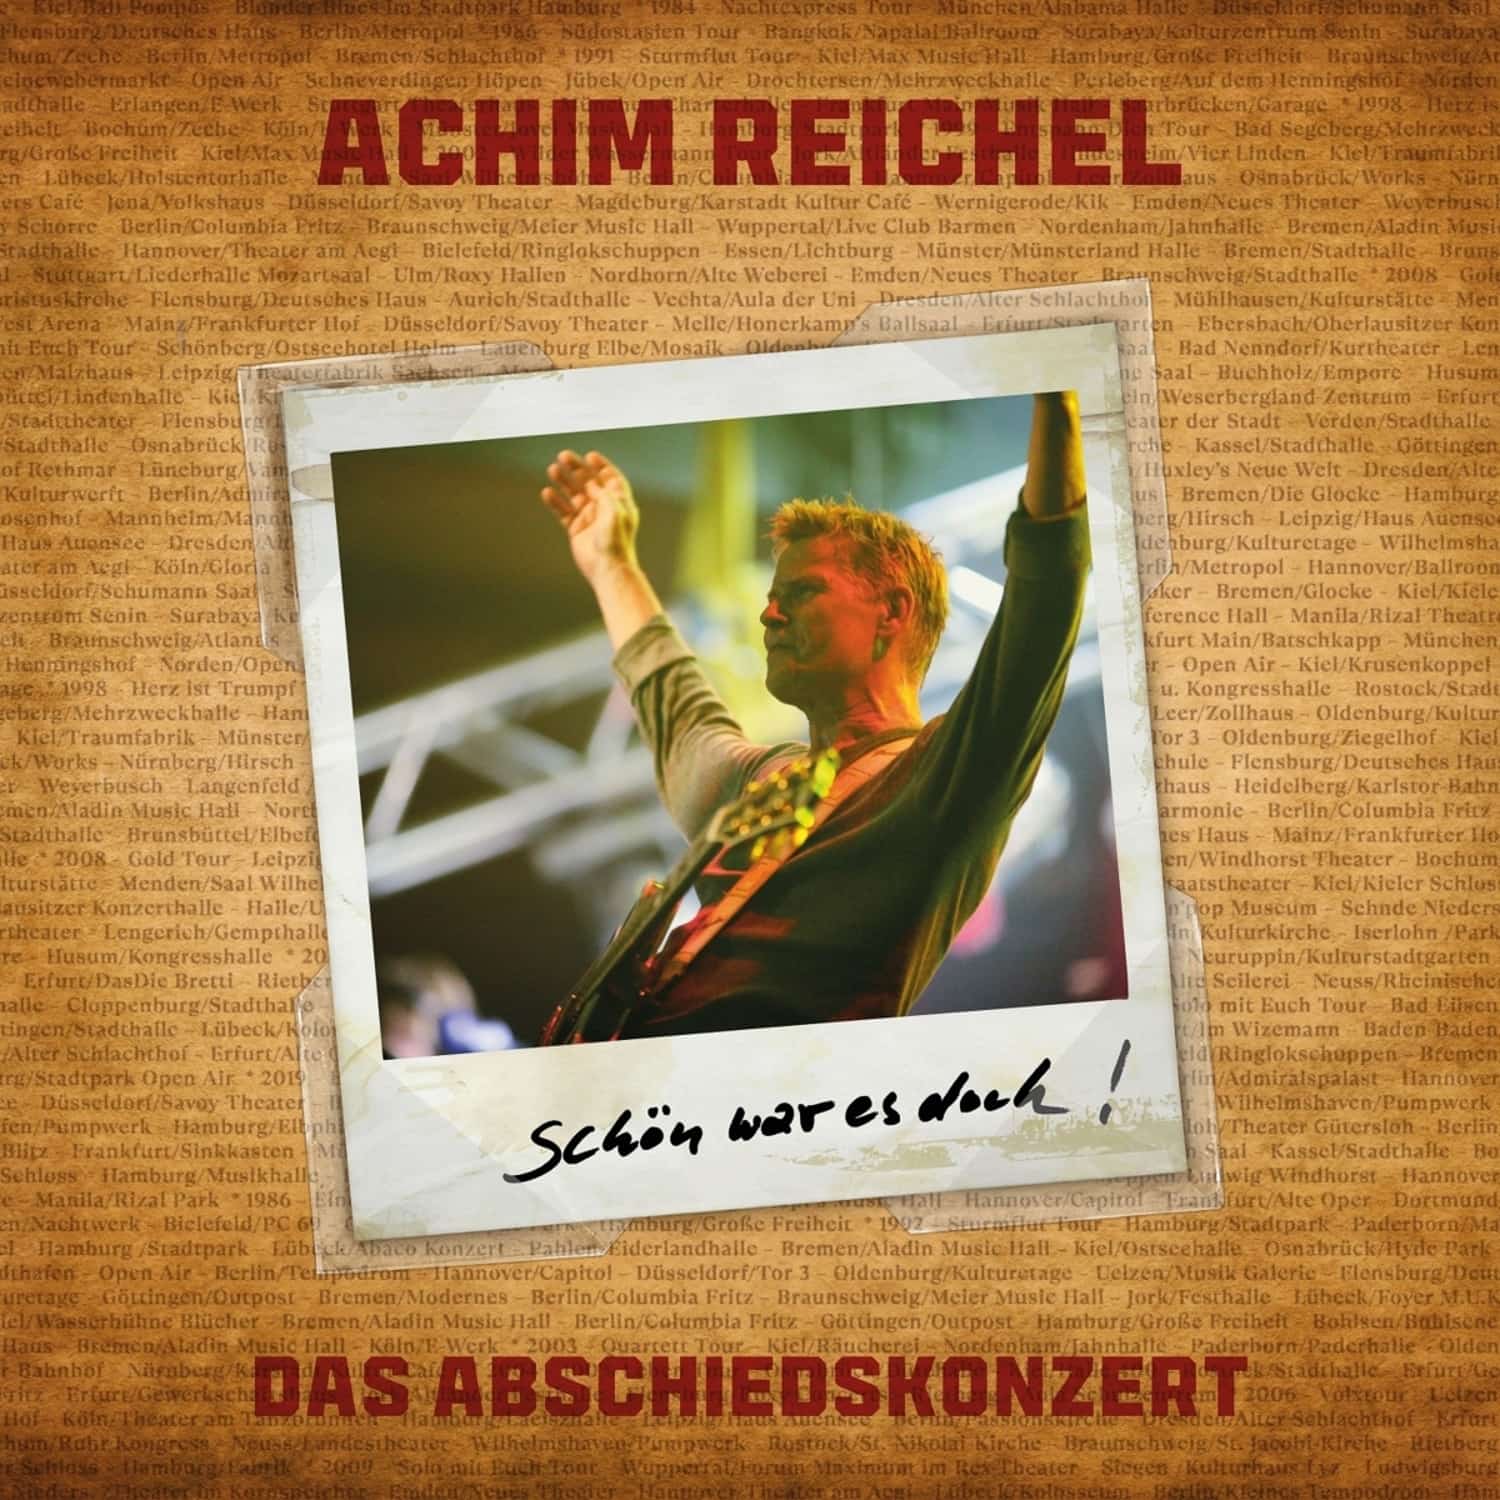 Achim Reichel - SCHN WAR ES DOCH - DAS ABSCHIEDSKONZERT 